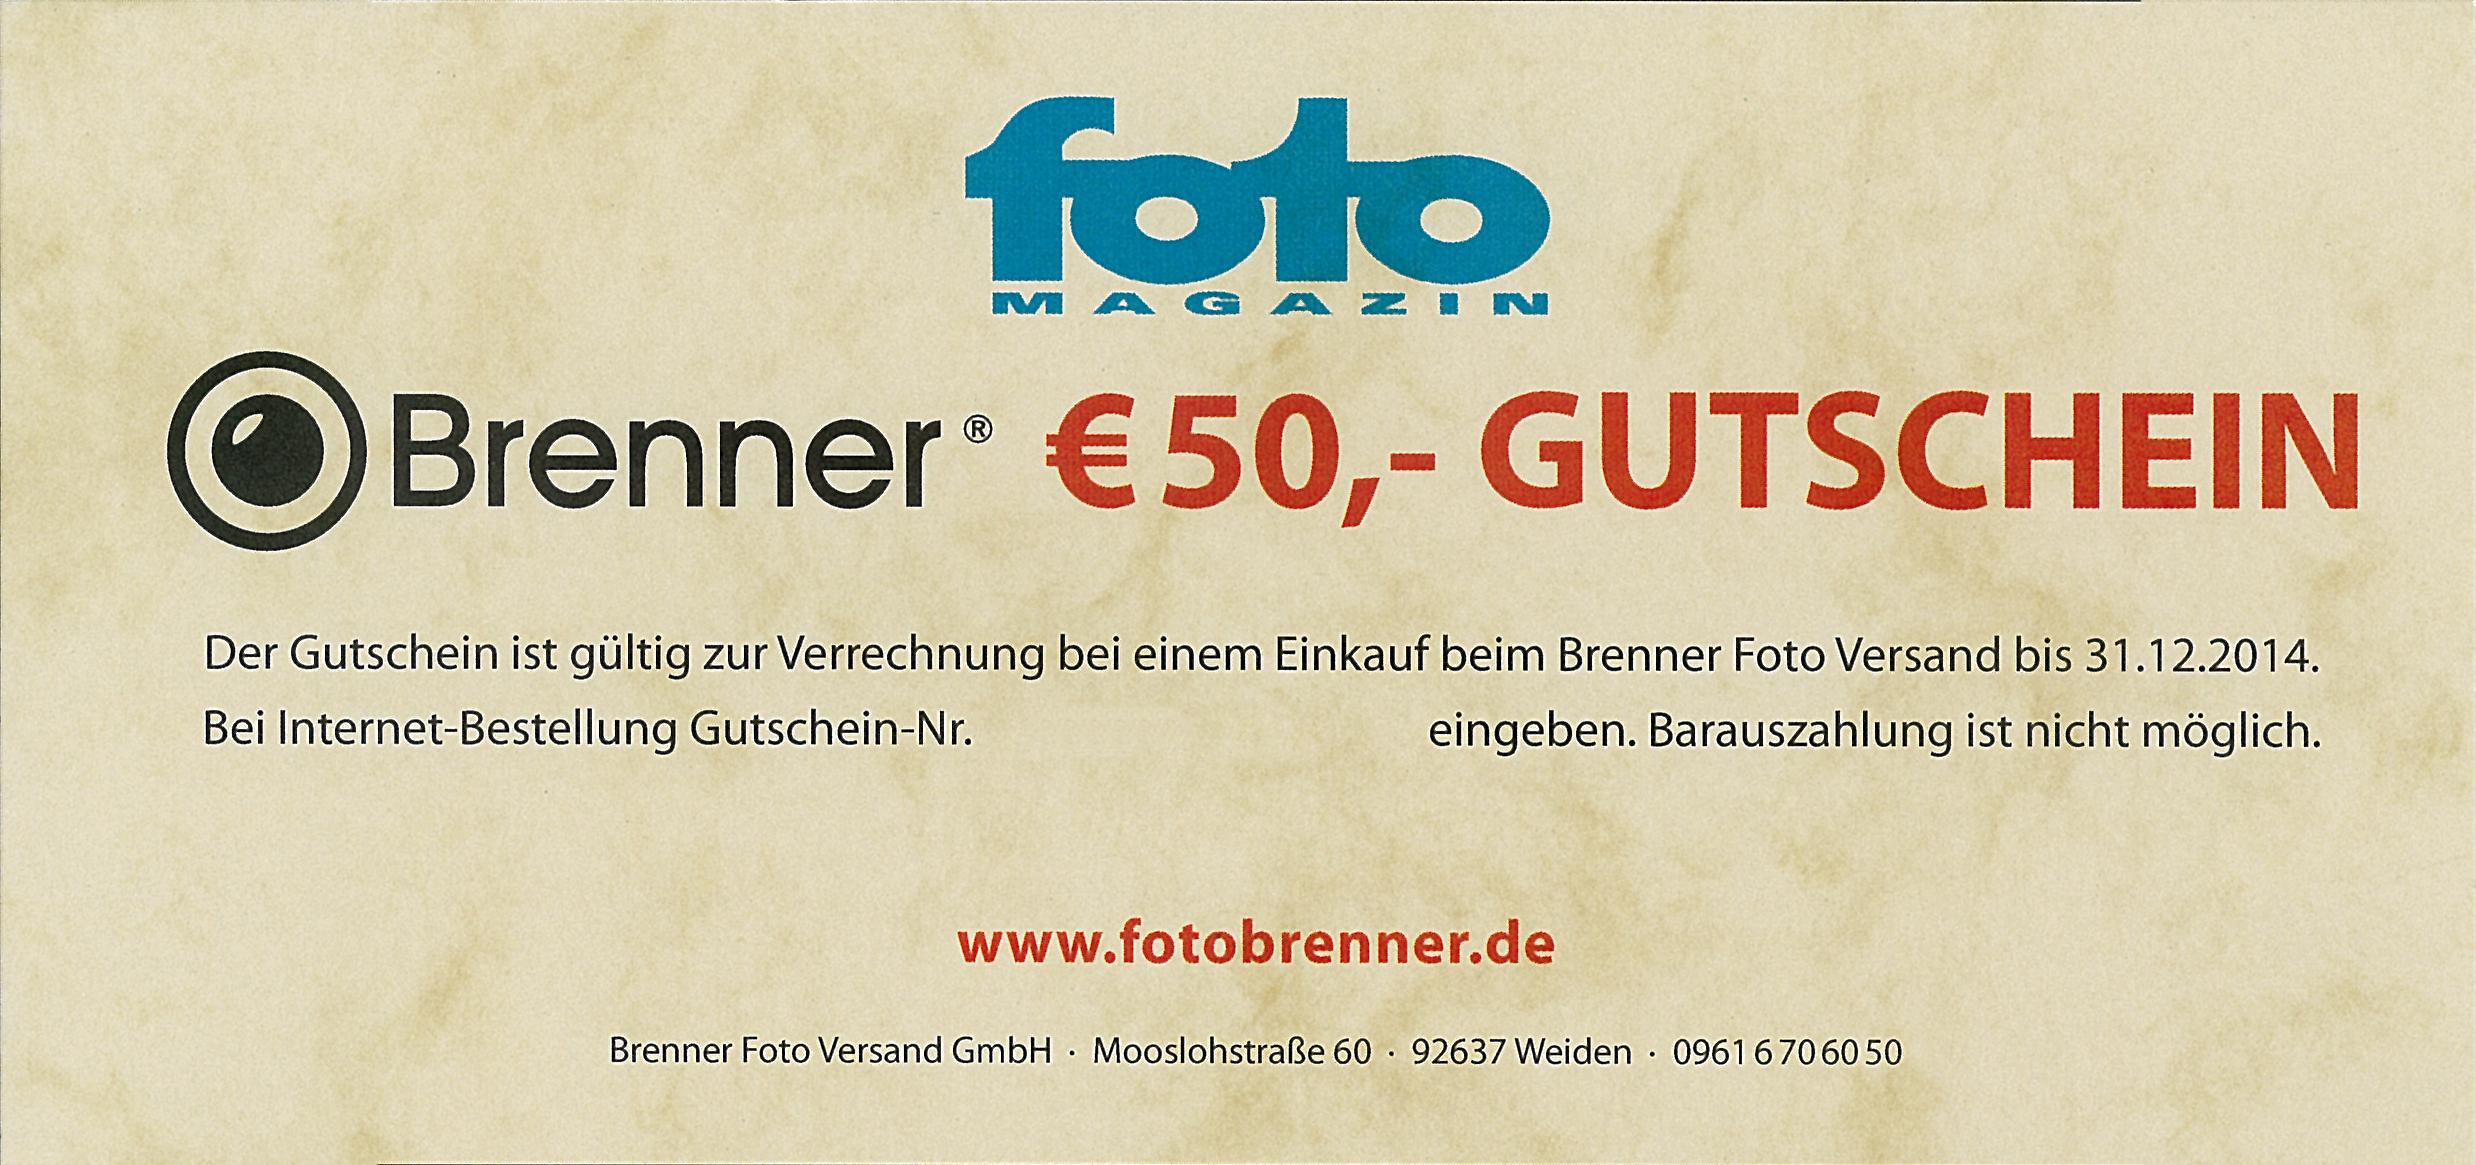 Brenner Gutschein 50 EUR